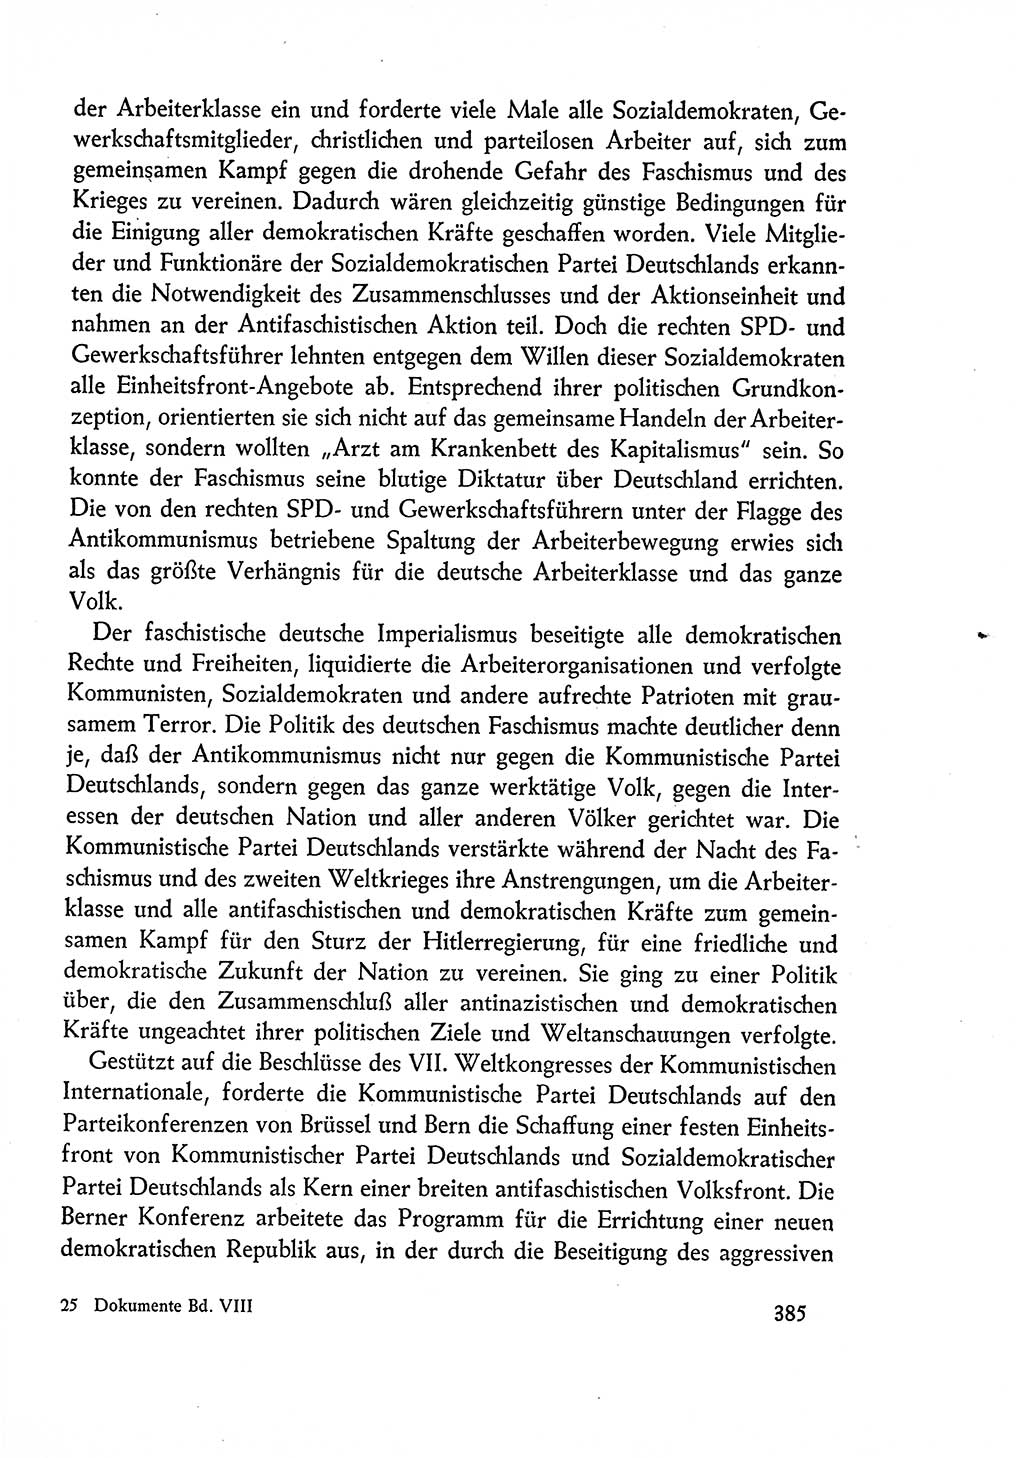 Dokumente der Sozialistischen Einheitspartei Deutschlands (SED) [Deutsche Demokratische Republik (DDR)] 1960-1961, Seite 385 (Dok. SED DDR 1960-1961, S. 385)